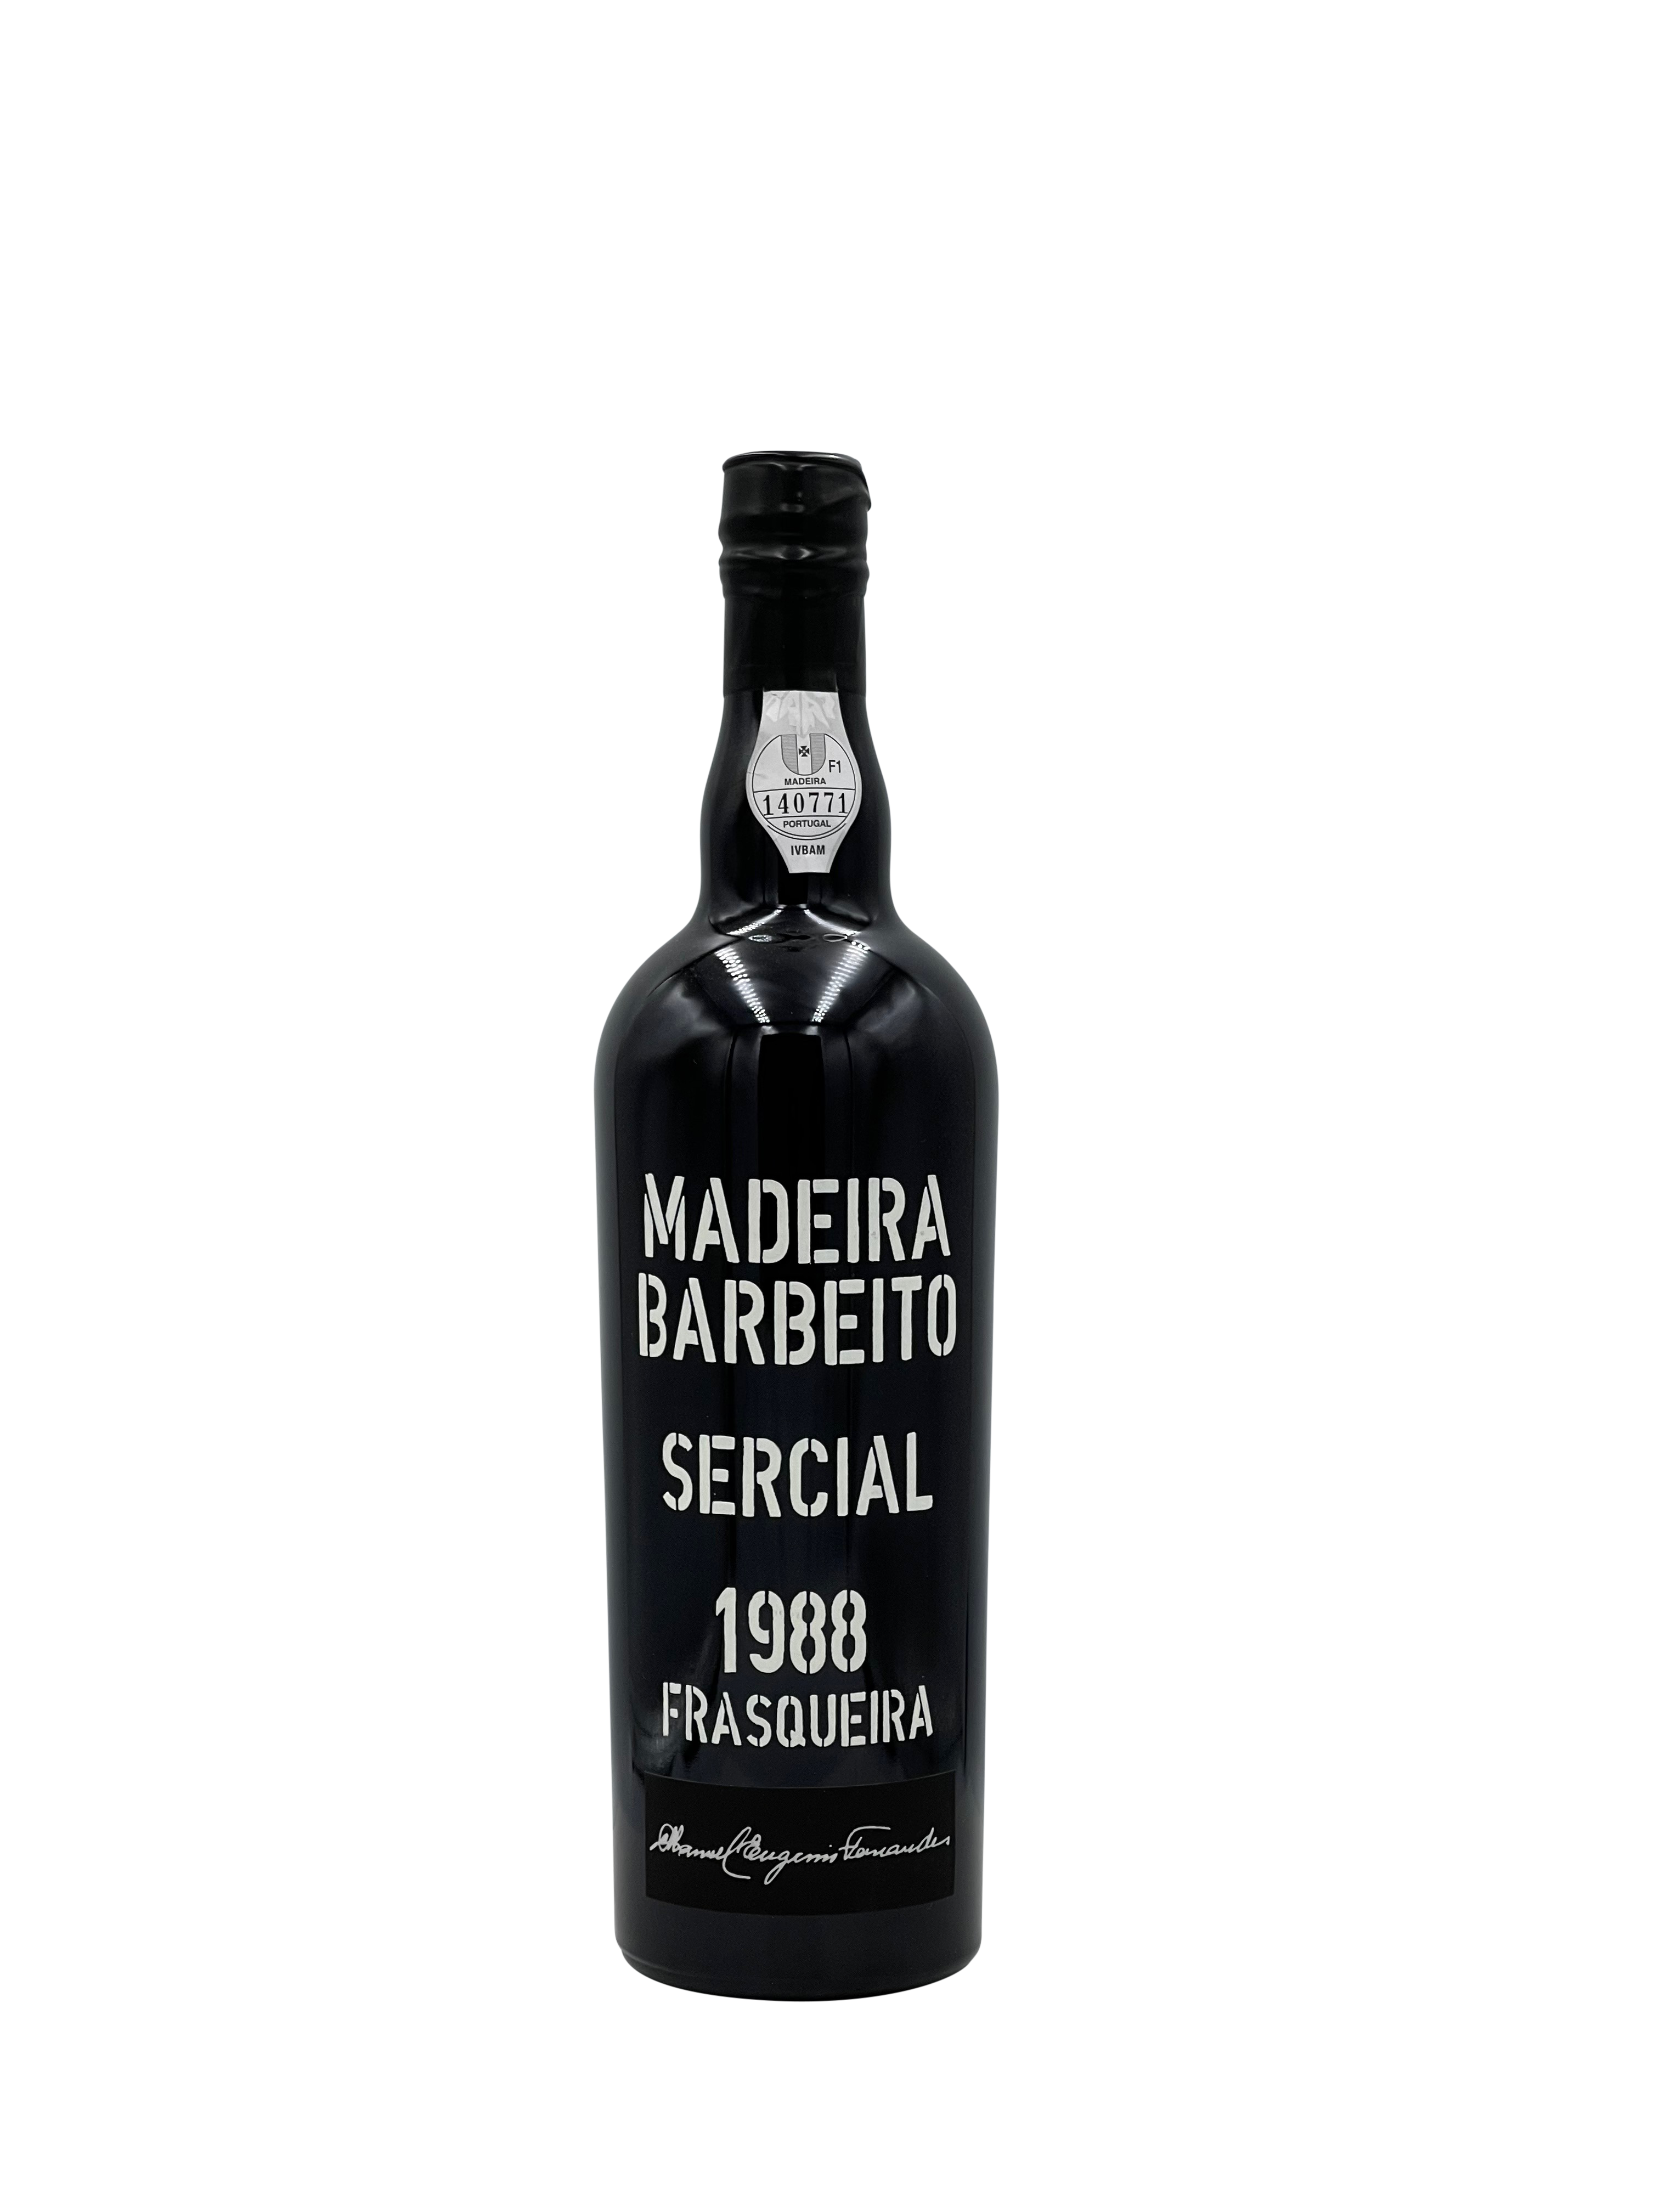 Barbeito Madeira "Frasqueira" Sercial 1988